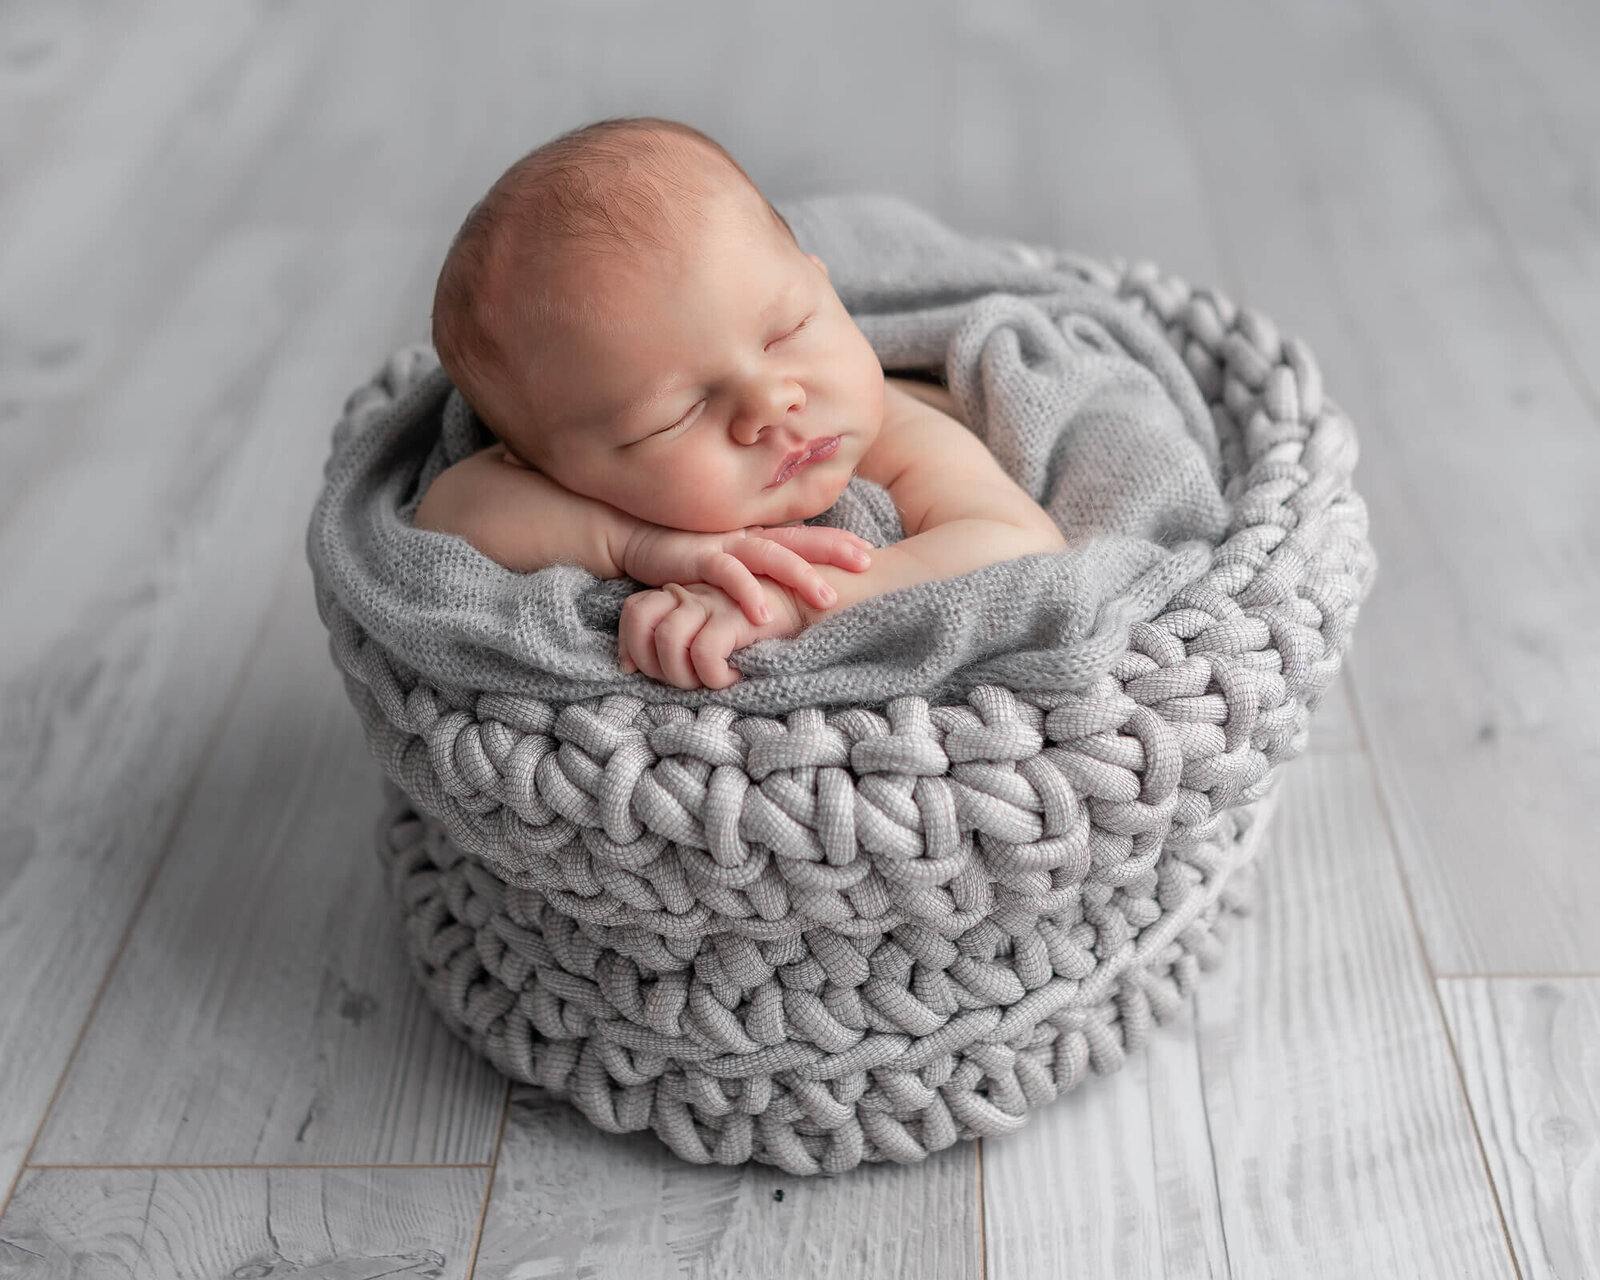 Newborn in a grey knit baasket